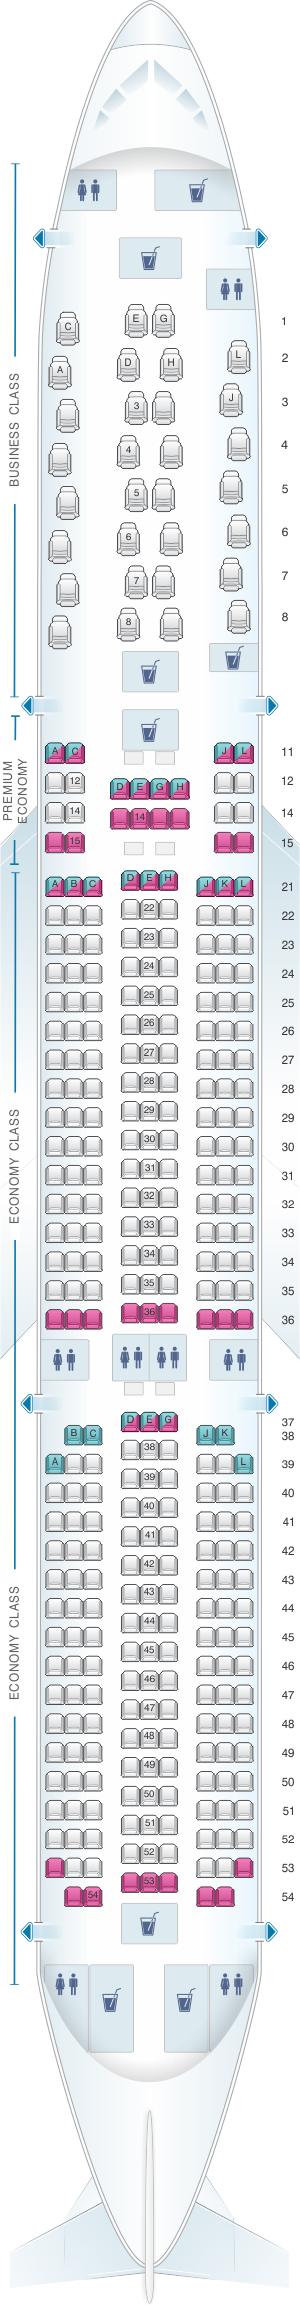 Finnair A350 Seat Map Finnair Airbus A350 900 Seating Plan Seat Plan